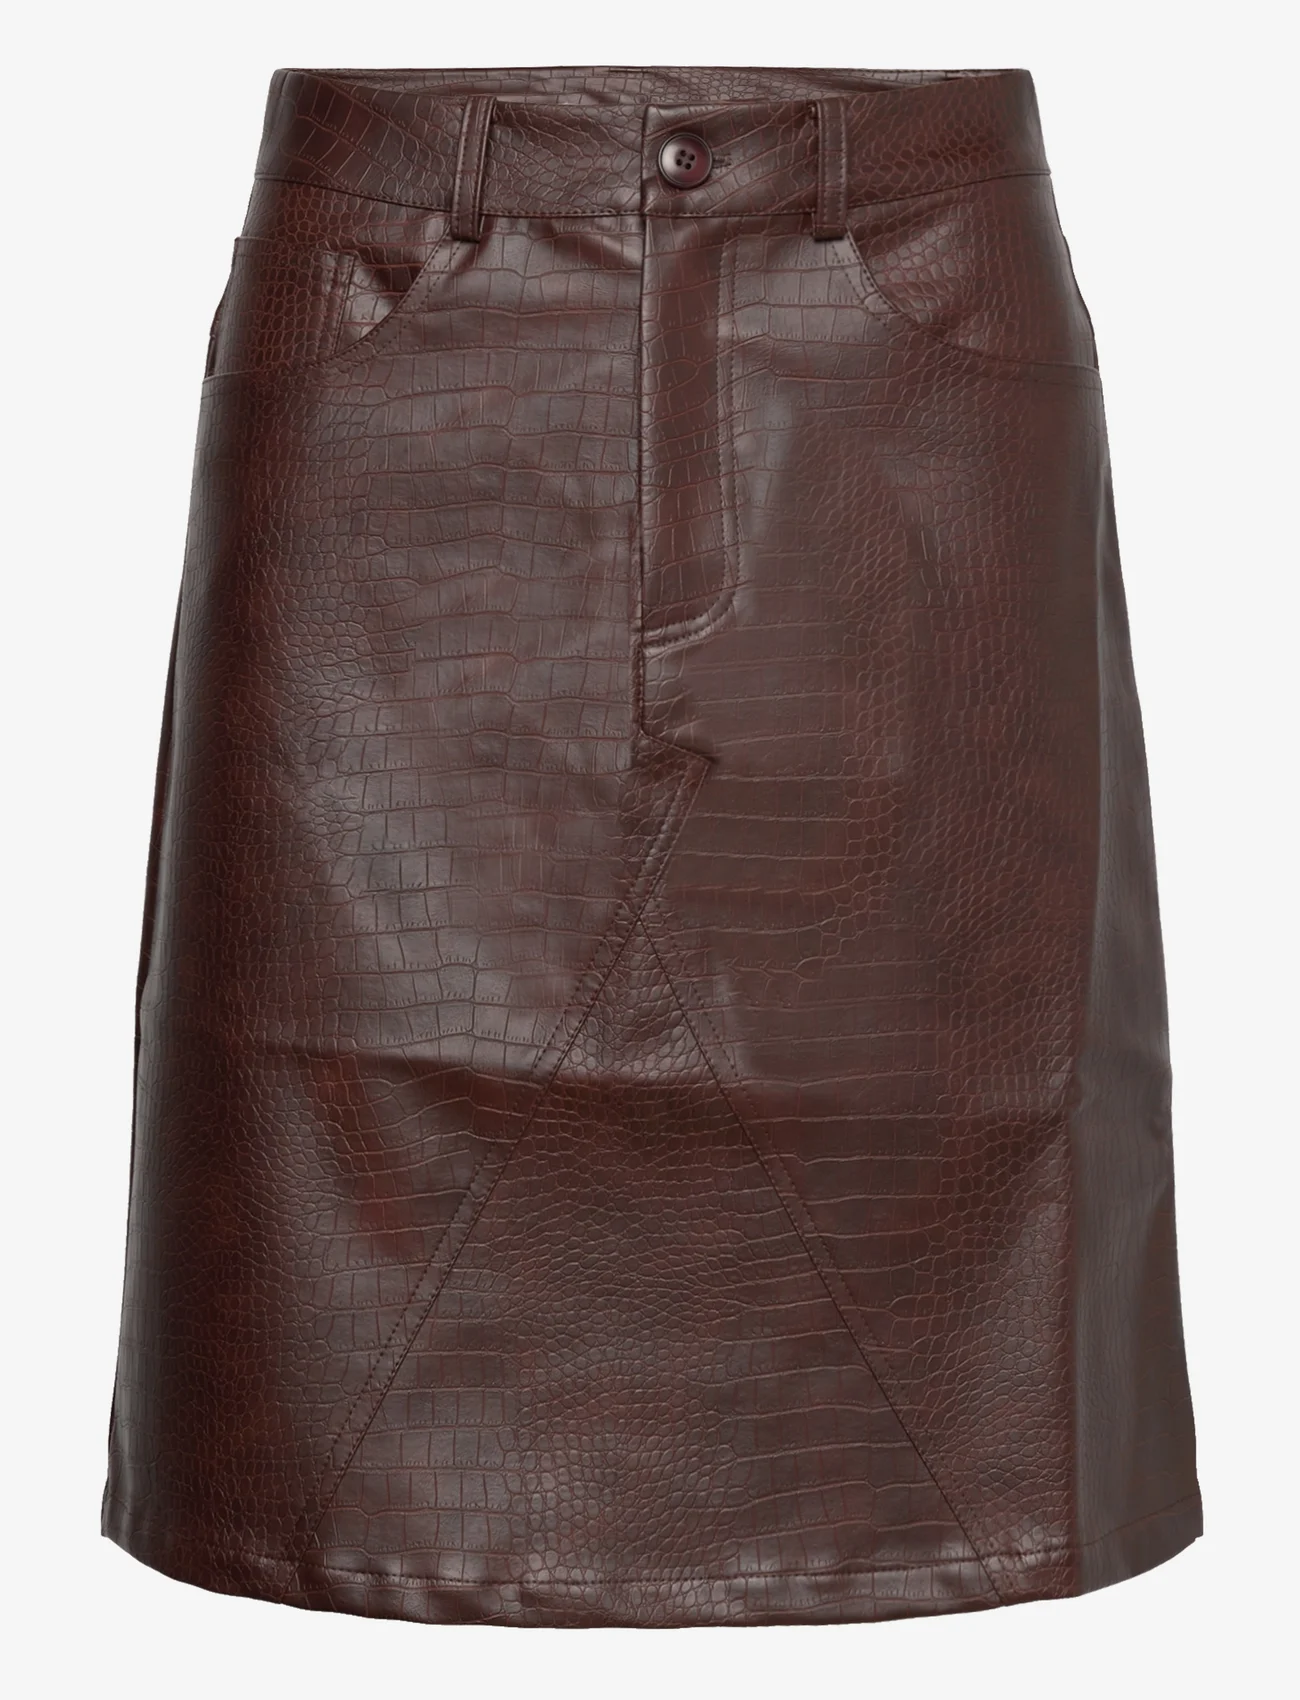 Hosbjerg - Jelona Croc Skirt - short skirts - brown - 0